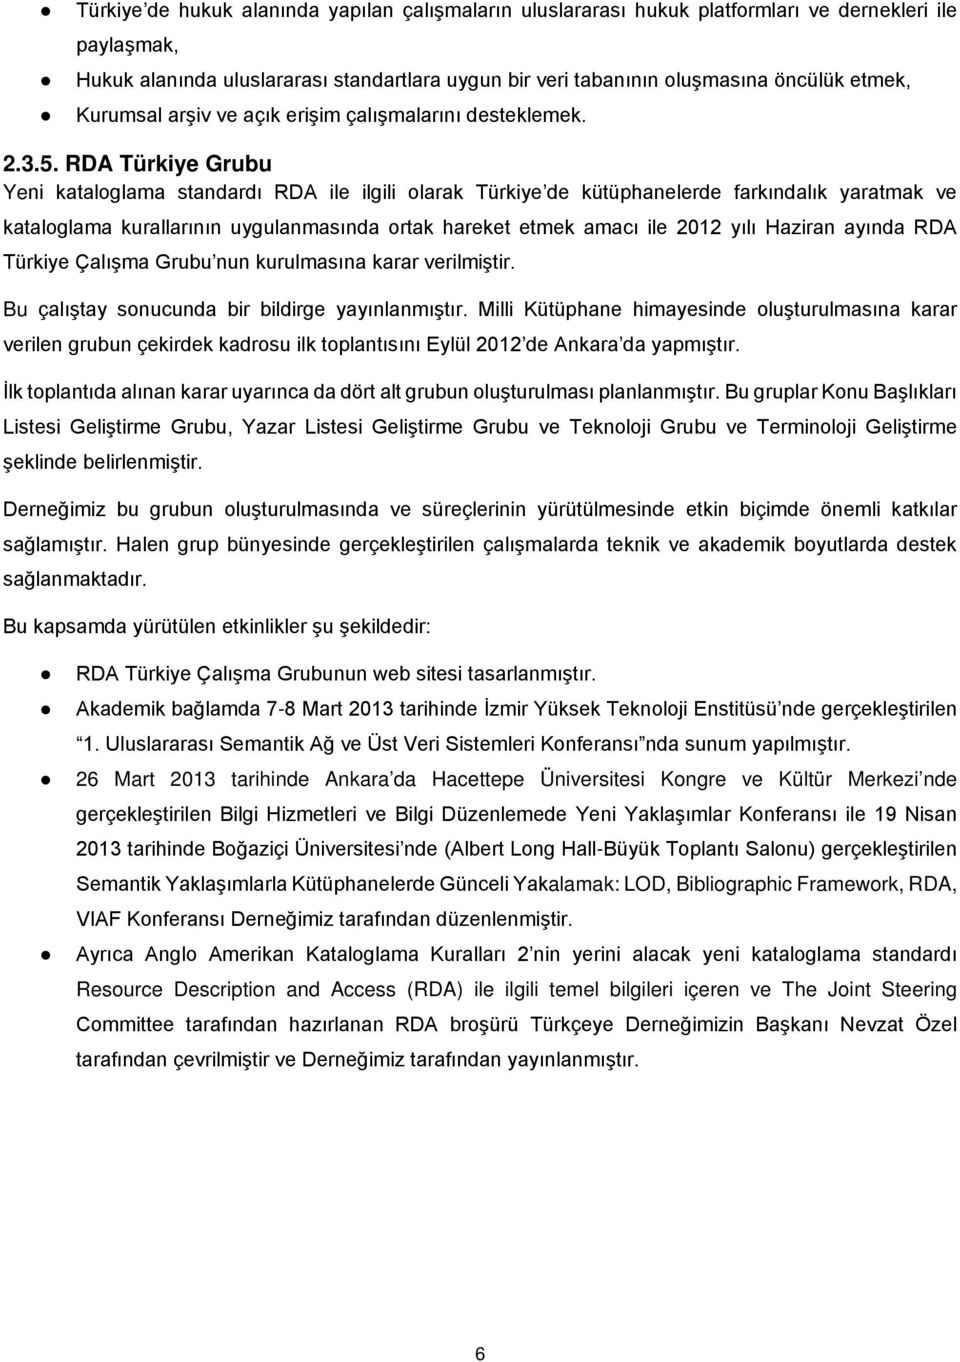 RDA Türkiye Grubu Yeni kataloglama standardı RDA ile ilgili olarak Türkiye de kütüphanelerde farkındalık yaratmak ve kataloglama kurallarının uygulanmasında ortak hareket etmek amacı ile 2012 yılı